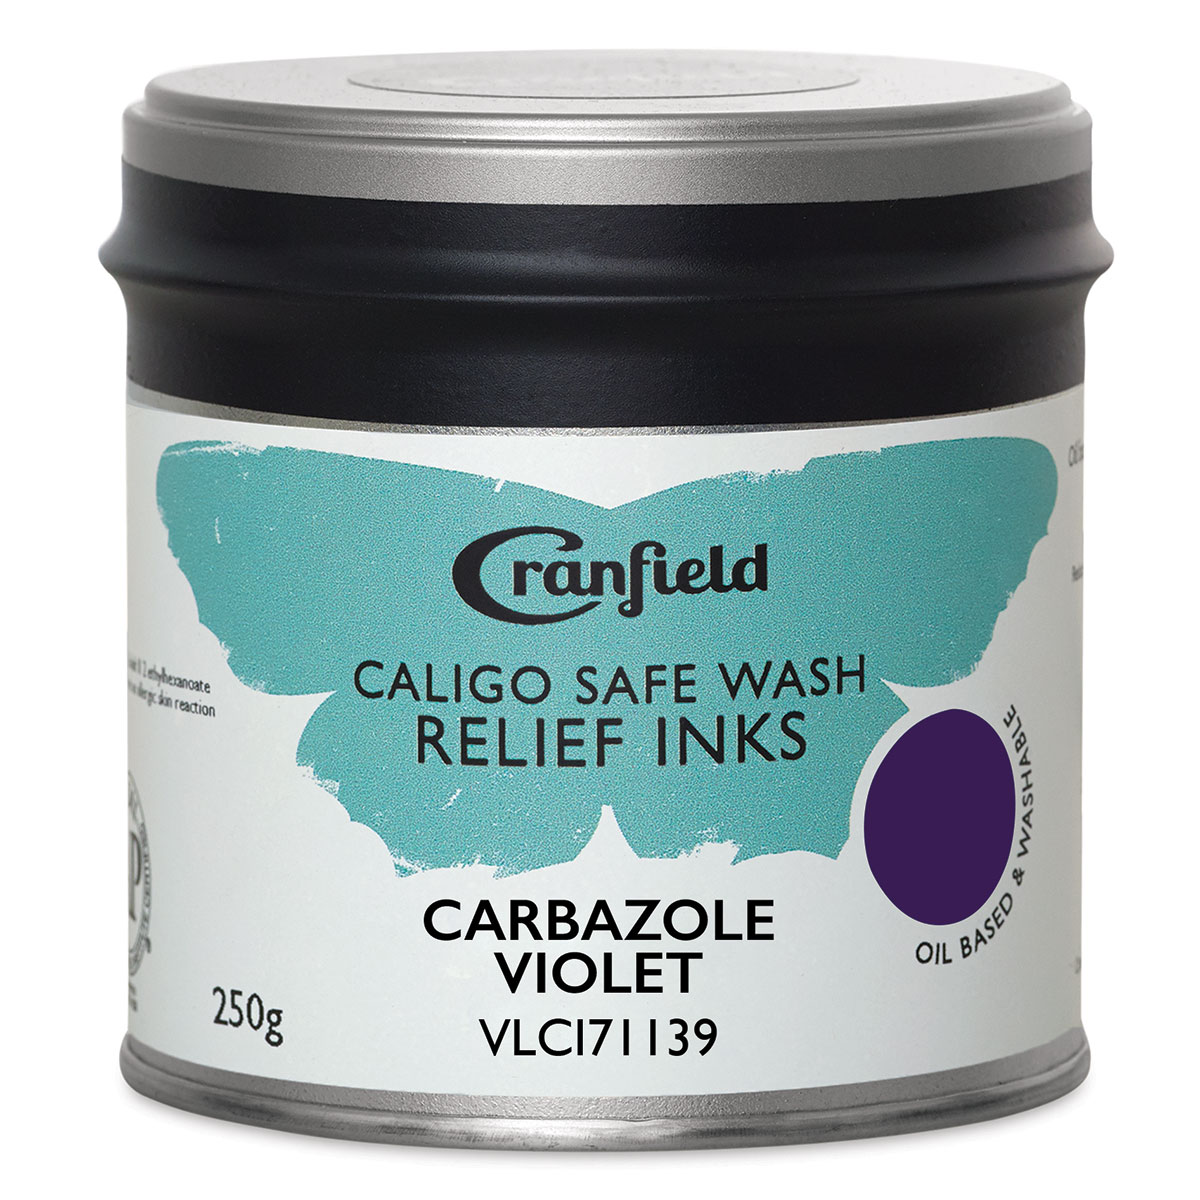 Cranfield Caligo Safe Wash Relief Ink - Carbazole Violet, 250 g